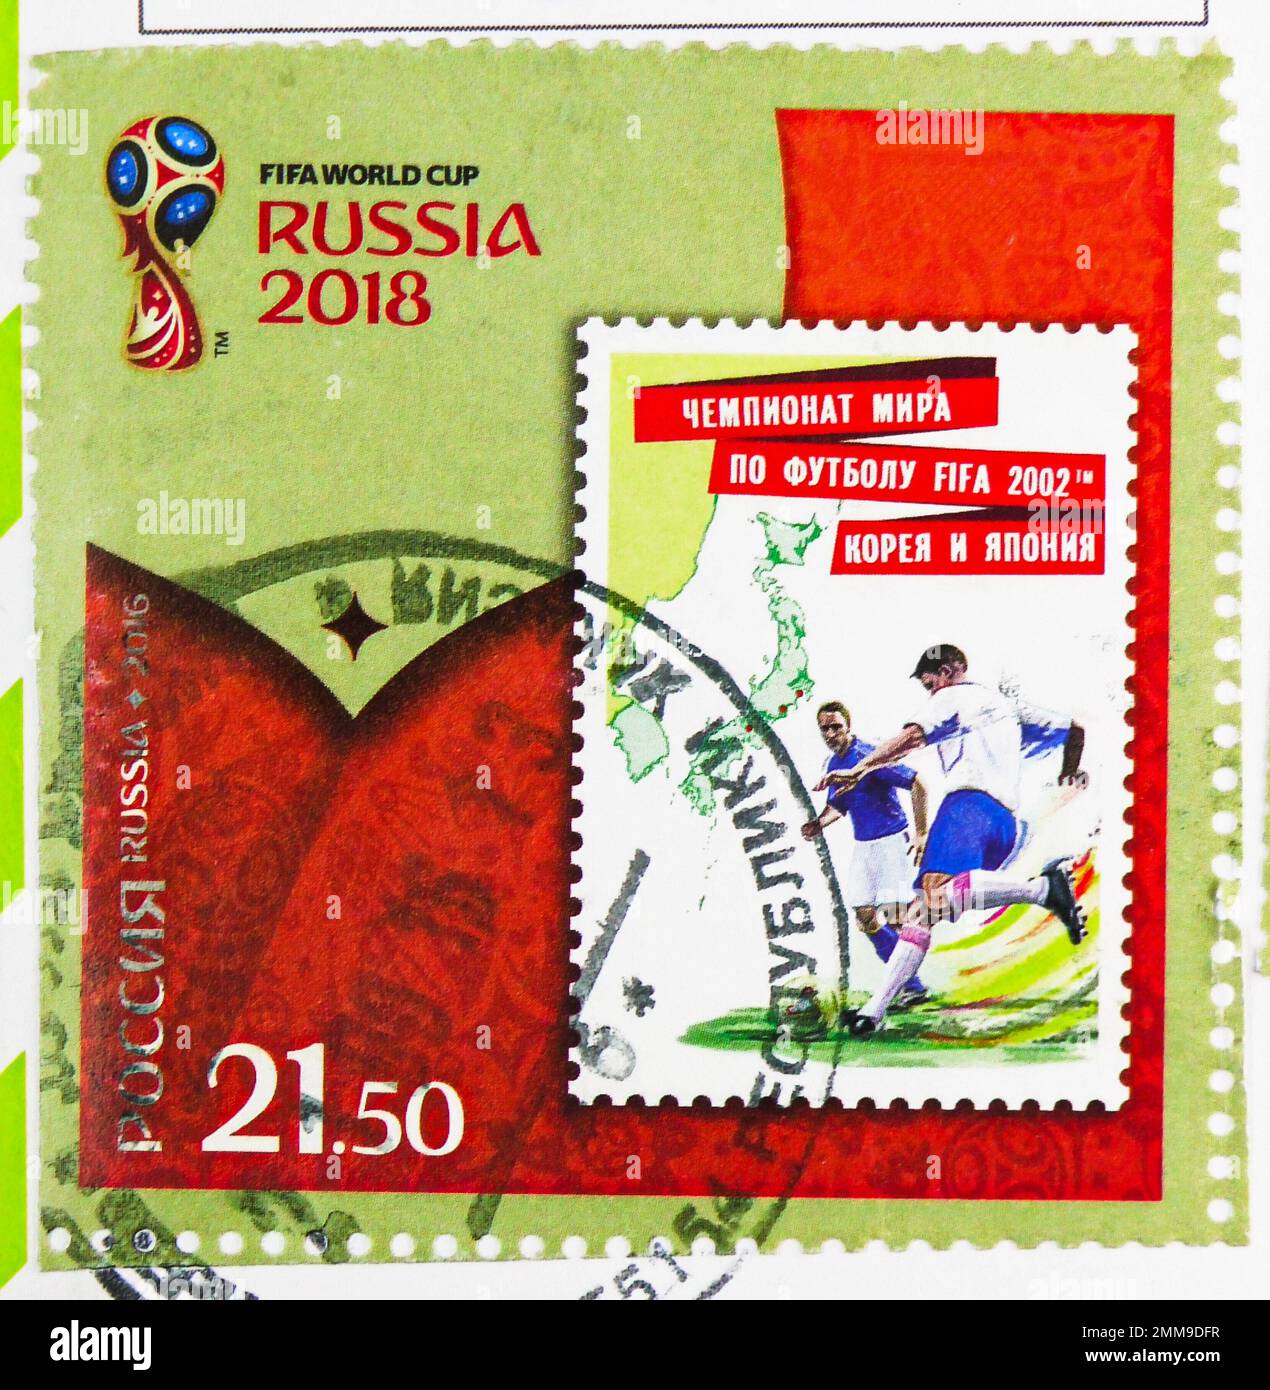 MOSCOU, RUSSIE - 30 OCTOBRE 2022: Timbre-poste imprimé en Russie montre 2002 Stamp, Russie en coupe du monde de la FIFA, 2018 série, vers 2016 Banque D'Images